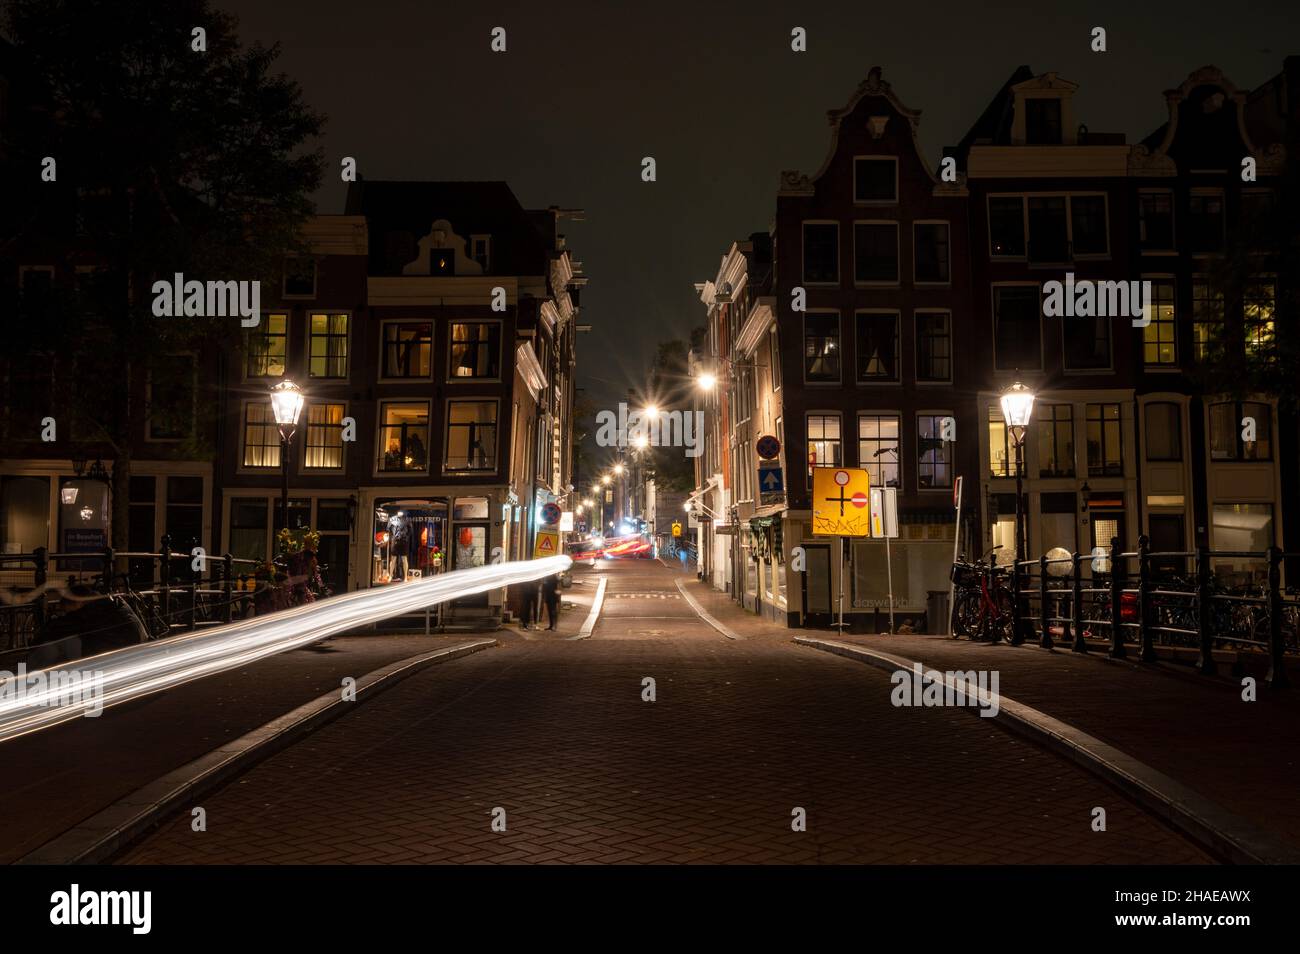 The Negen Straatjes district at night. Amsterdam, Grachtengordel, Netherlands Stock Photo